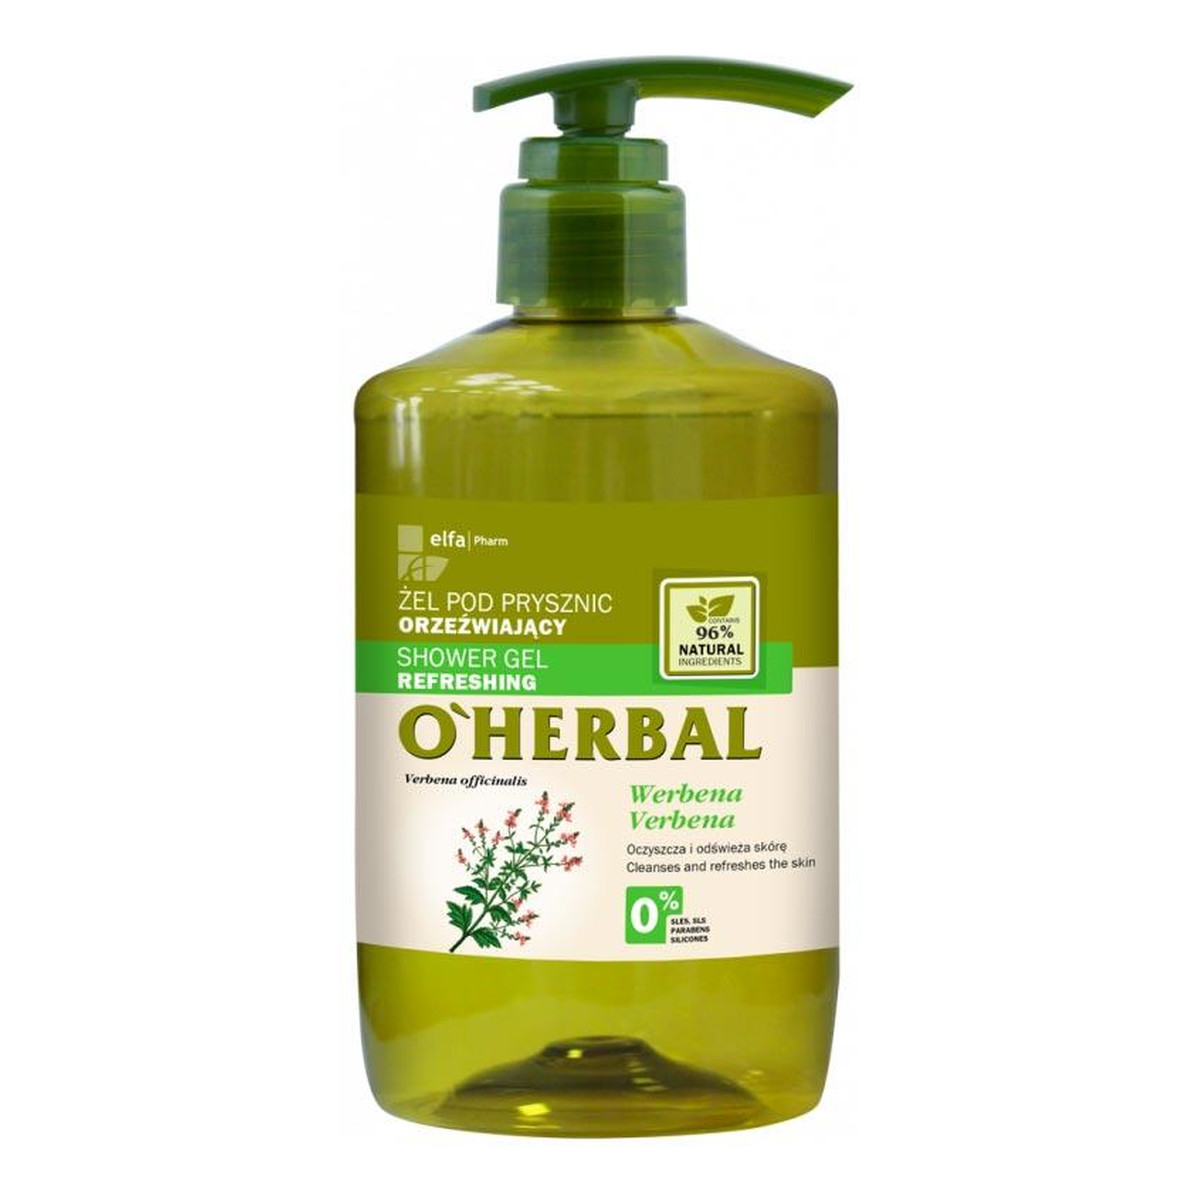 O'Herbal Shower Gel Refreshing Żel pod prysznic orzeźwiający z ekstraktem z werbeny 750ml